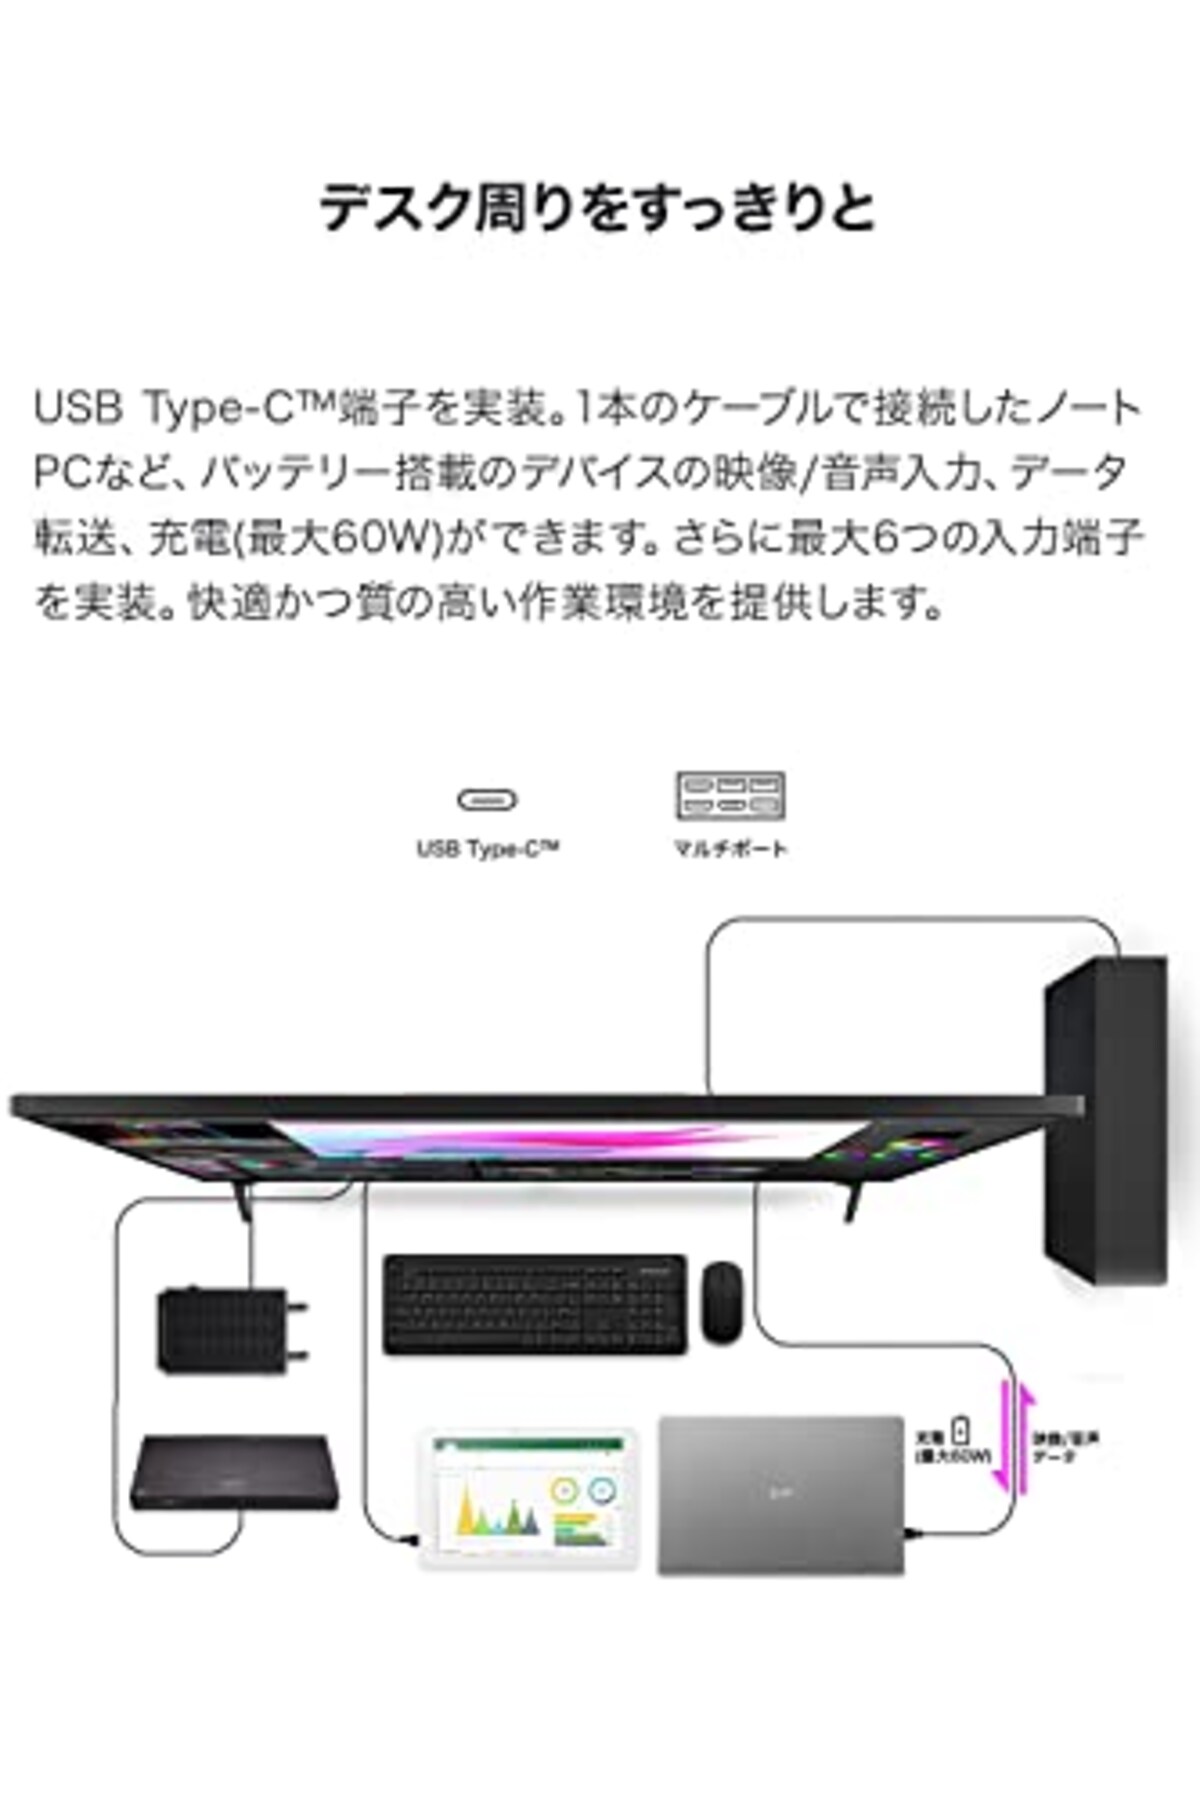  【Amazon.co.jp限定】LG モニター ディスプレイ 43UN700T-B 42.5インチ/4K/HDR対応/IPS非光沢/HDMI×4,DP,USB Type-C/スピーカー/ブルーライト低減、フリッカーセーフ/リモコン付属 /3年安心・無輝点保証画像5 